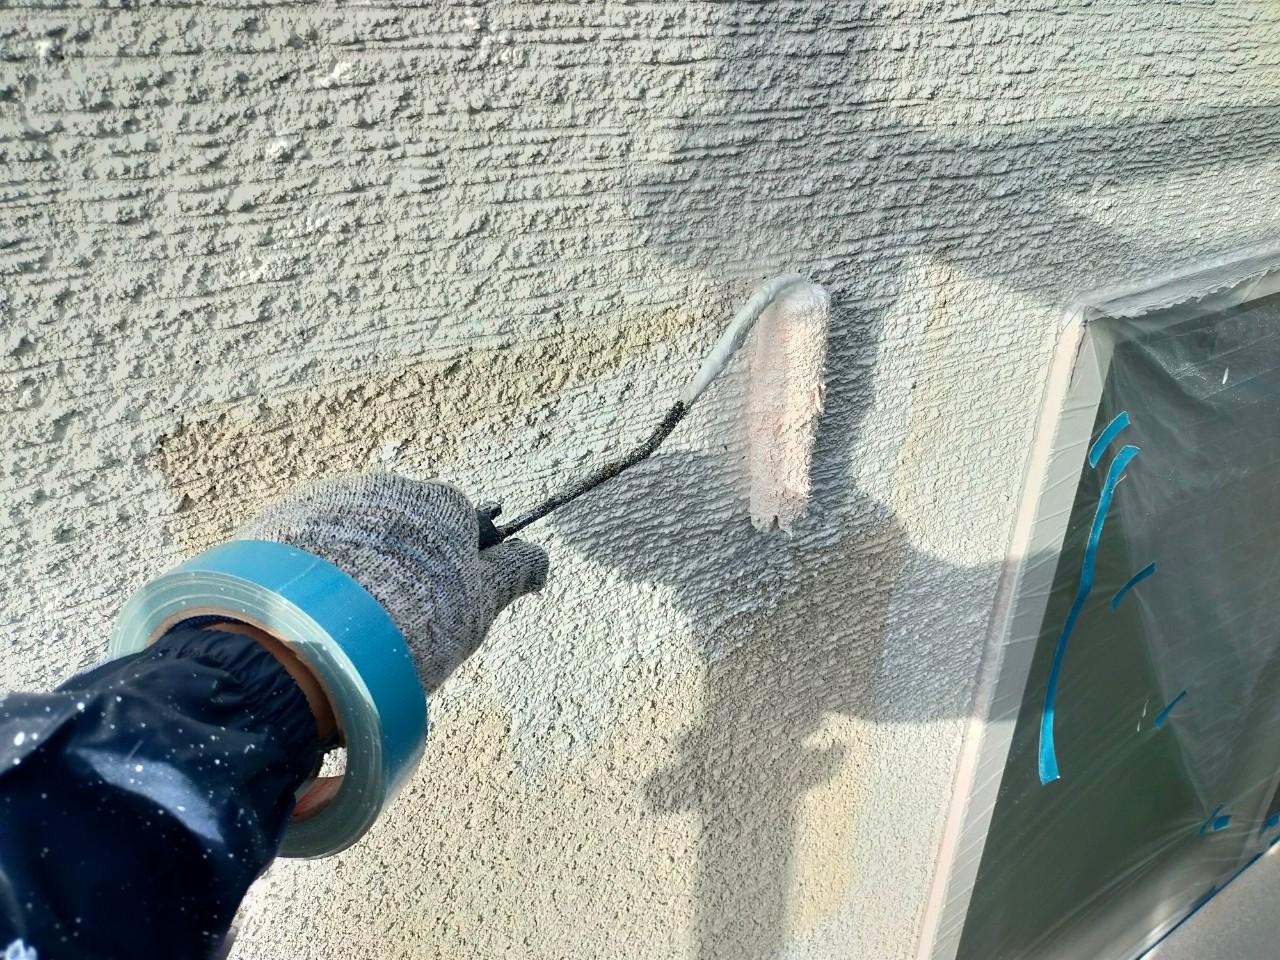 福岡県福岡市東区照葉のU様邸で汚れもピカピカに新築時のデザインを再現する外壁塗装を行いました。屋上の防水工事もばっちりです。12/28完成です。【ホームページより】